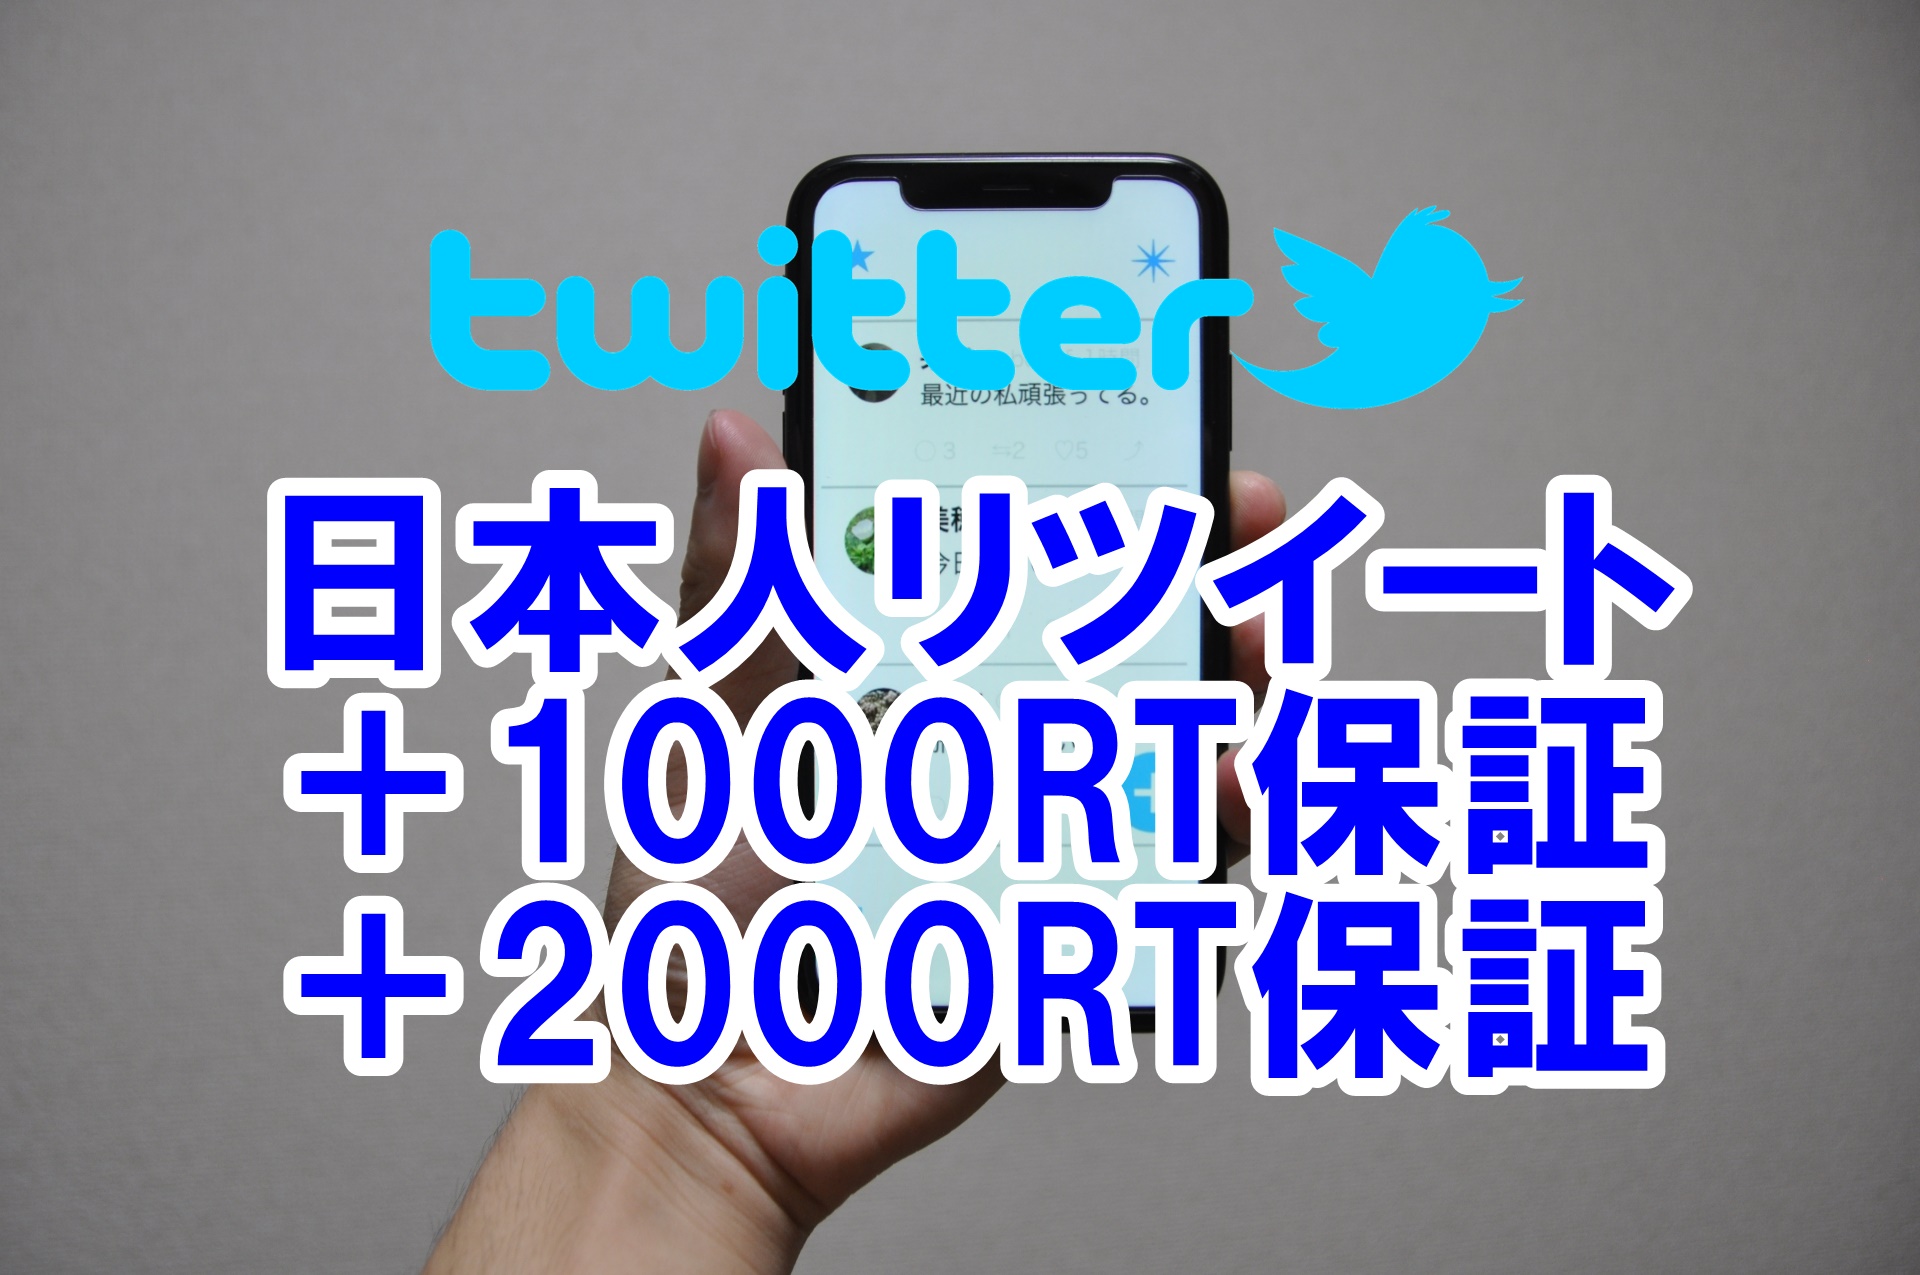 ツイッターの日本人RT リツイート数増加